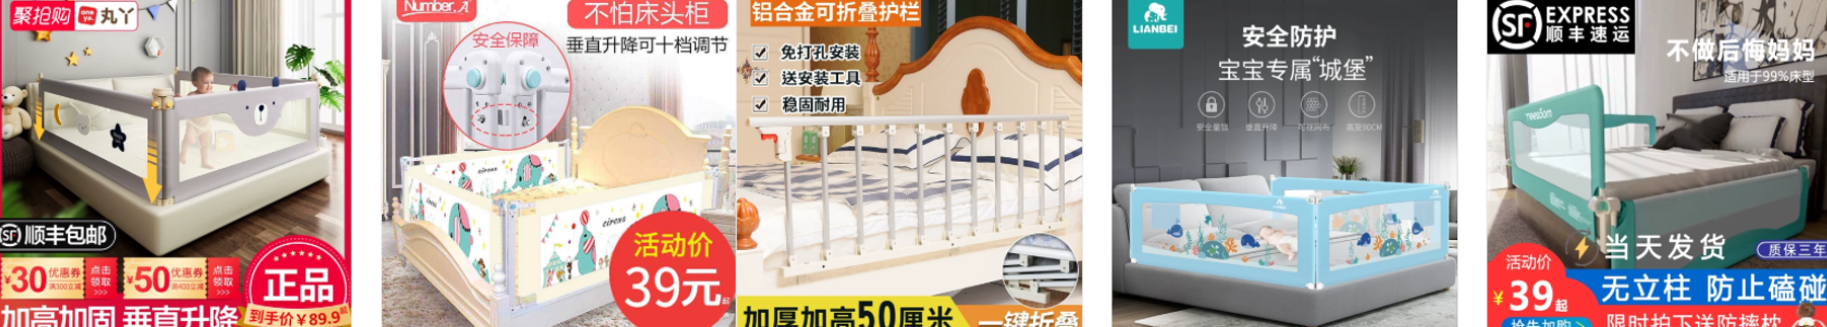 Hàng rào chắn giường, cầu thang siêu an toàn cho bé